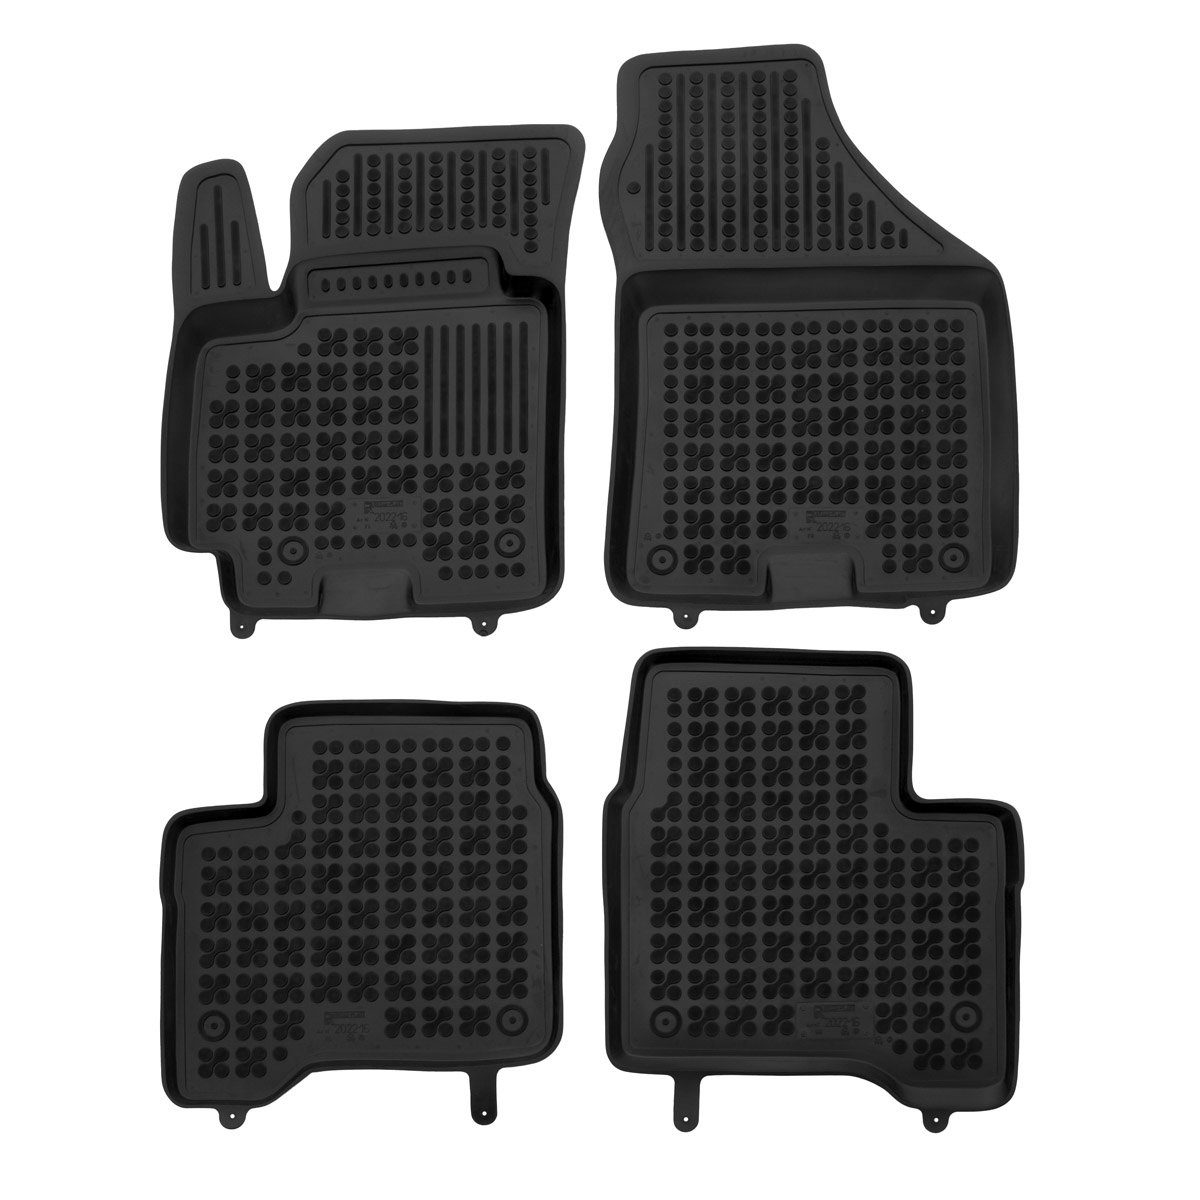 AZUGA Auto-Fußmatten Hohe Gummi-Fußmatten passend für VW Passat/Passat  Variant 3G/B8 ab 11, für VW Passat 4-türer Stufenheck,5-türer Variant